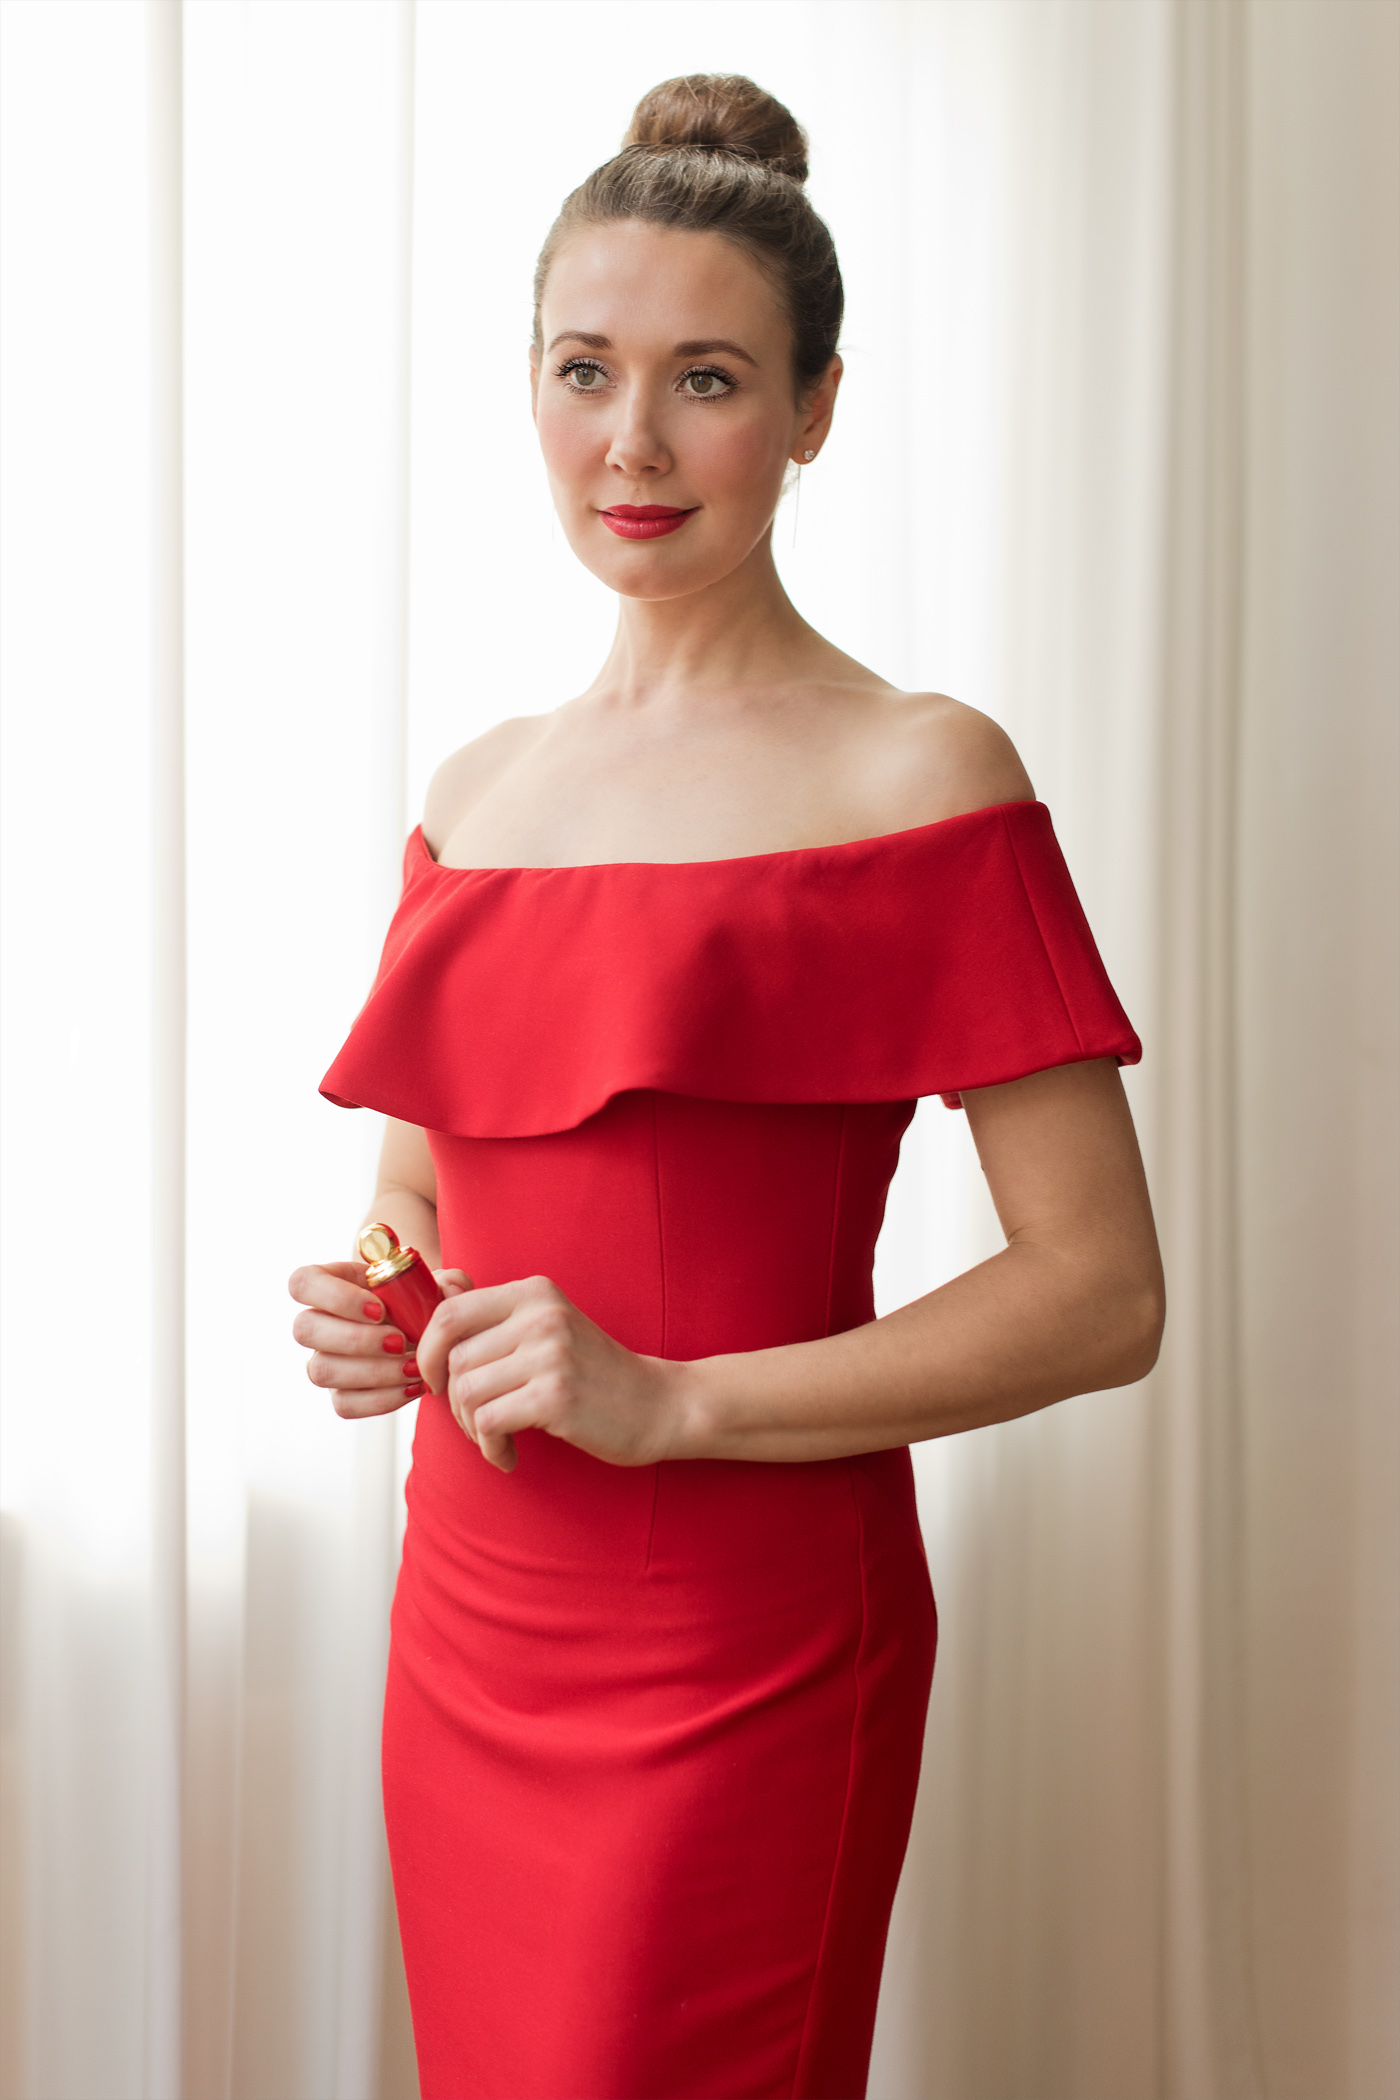 guerlain-dior-bobbi-brown-benefit-make-up-tutorial-zara-off-shoulder-red-dress-beautyblog